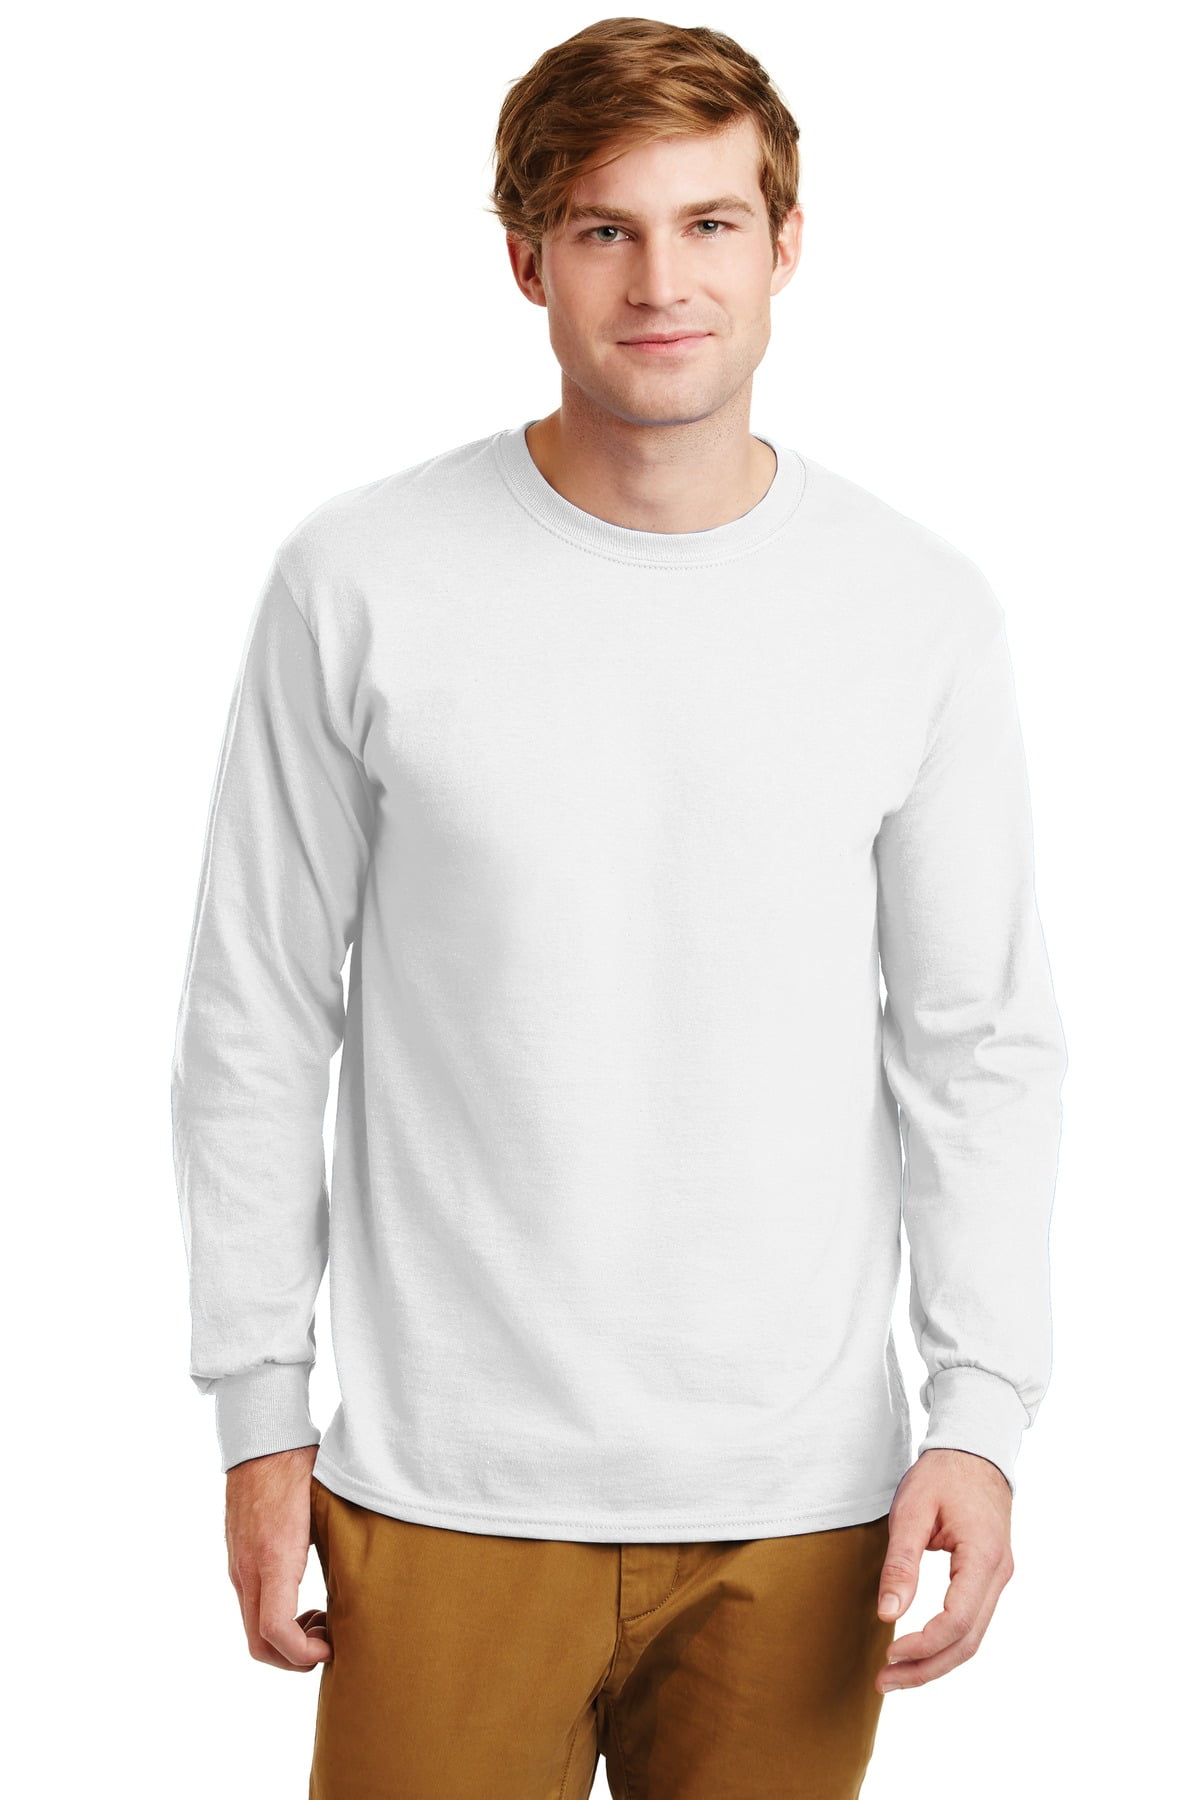 Gildan Men's Ultra Cotton 100% Cotton Long Sleeve T-Shirt G2400 ...